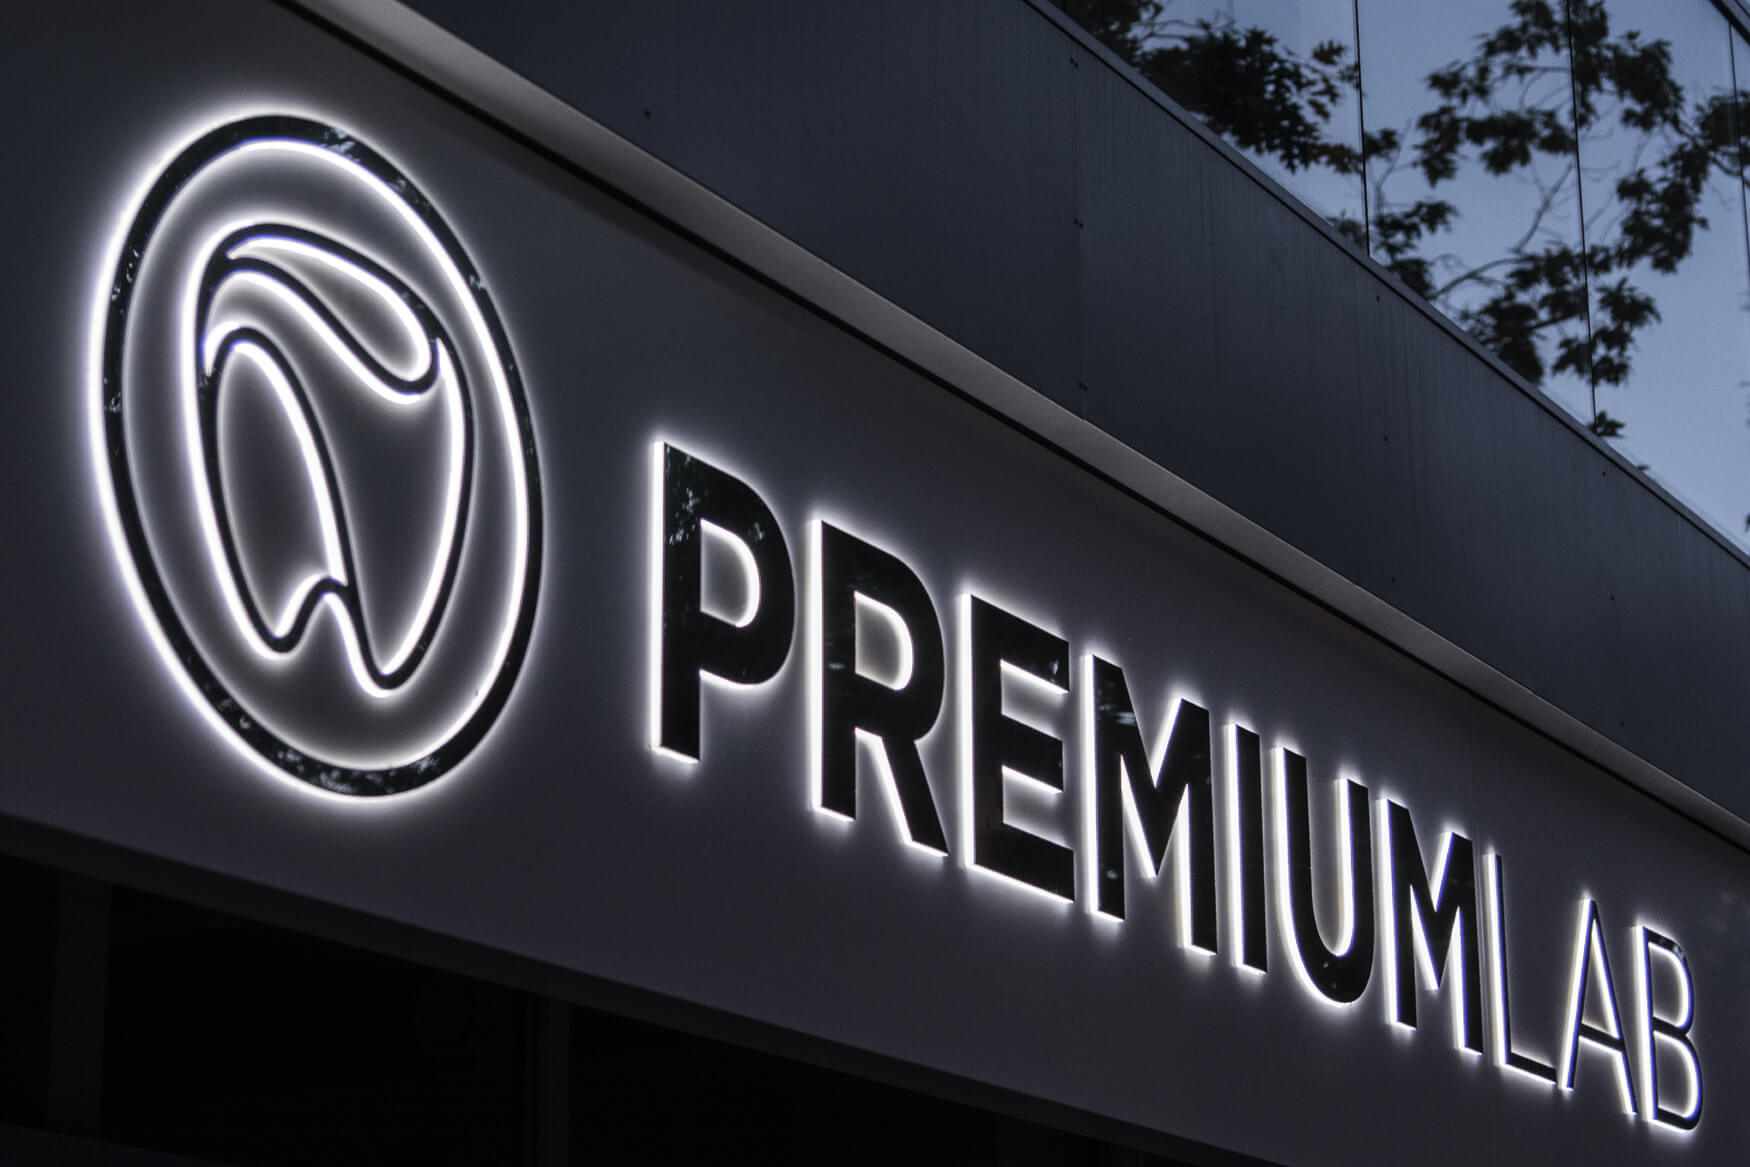 Premiumlab - Premiumlab - insegna aziendale posta su un cassone pubblicitario con lettere spaziali in metallo